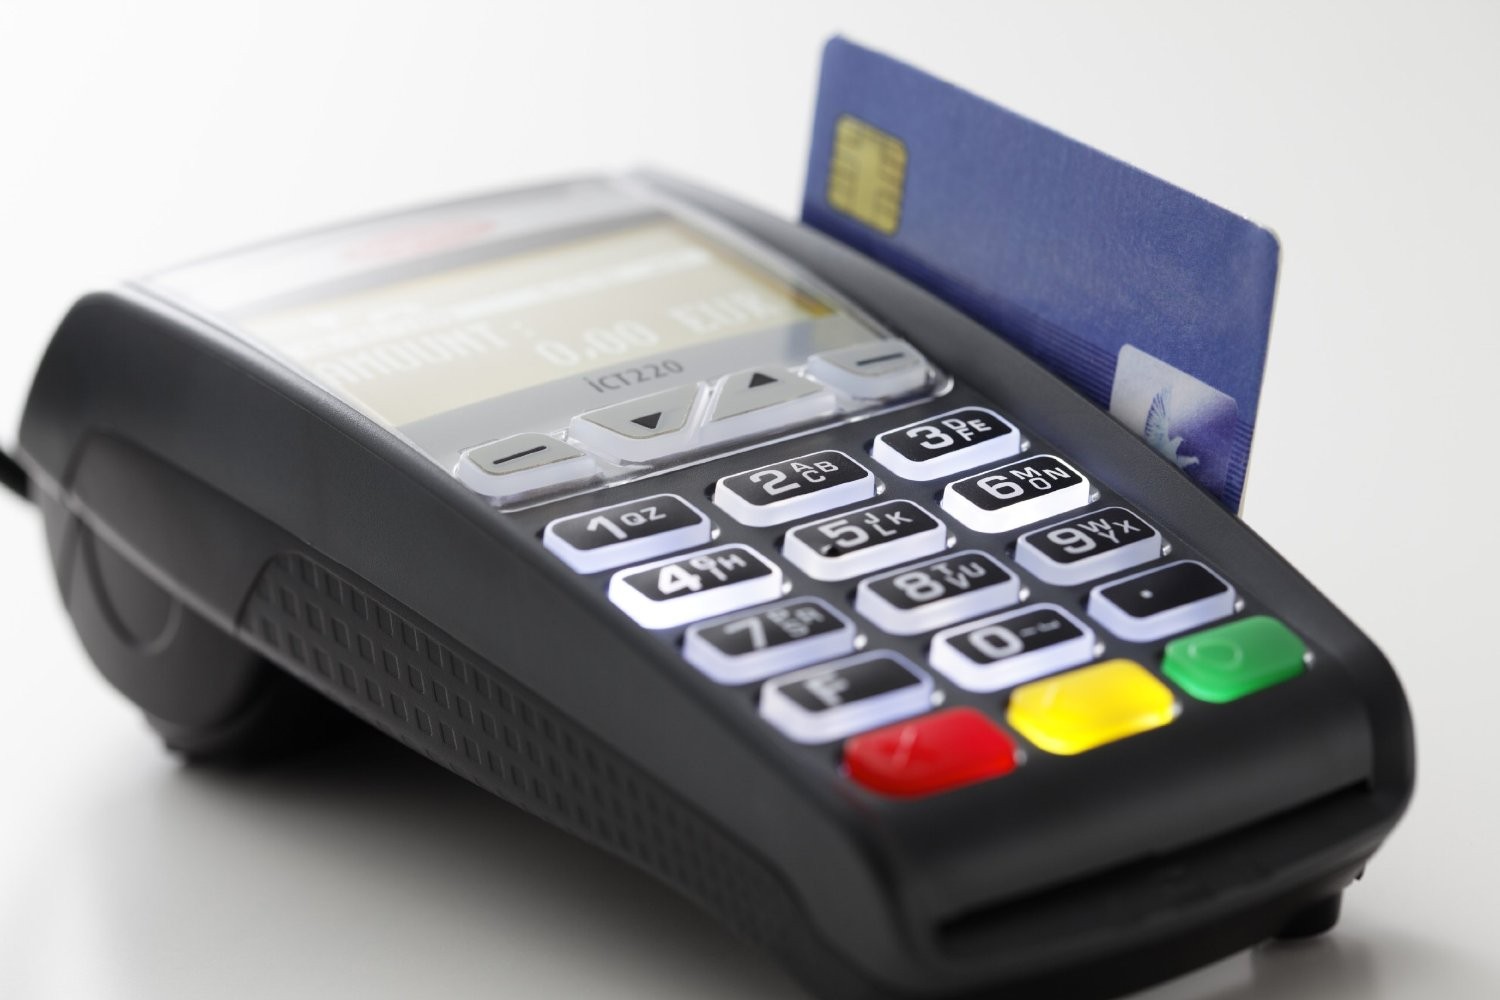 Мобильный терминал для оплаты банковскими картами